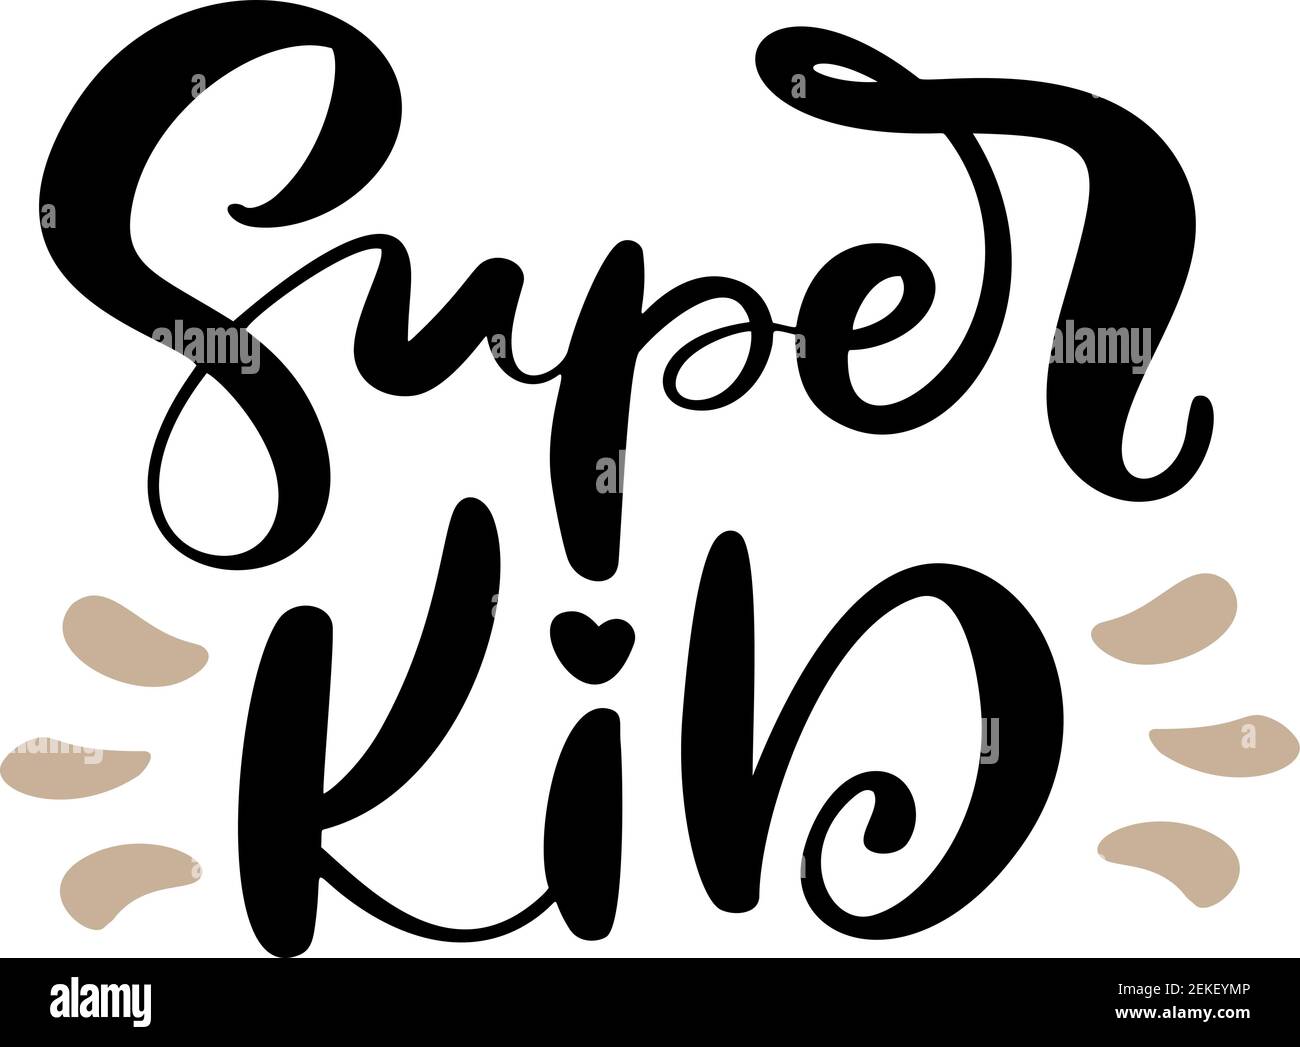 Super Kid Vektor Kalligraphie Schriftzug Text. Handgezeichnete Kinder modernen Zitat und Pinsel Stift Schriftzug isoliert auf weiß. Kinder entwerfen Grußkarten Stock Vektor